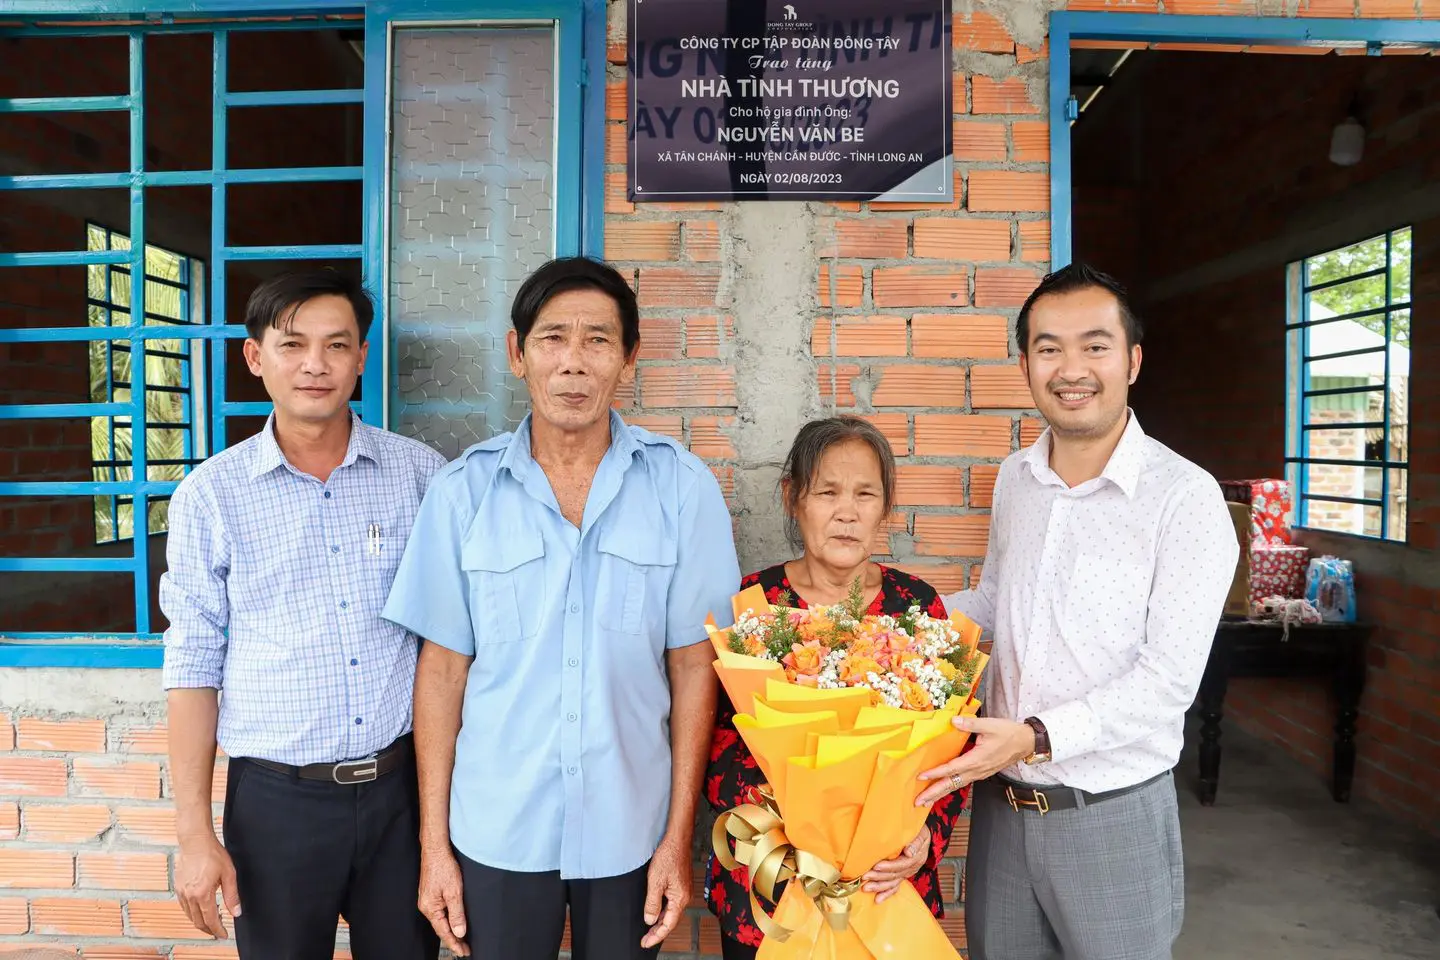 Đông Tây Group trao tặng nhà tình thương cho hộ dân khó khăn tại tỉnh Long An